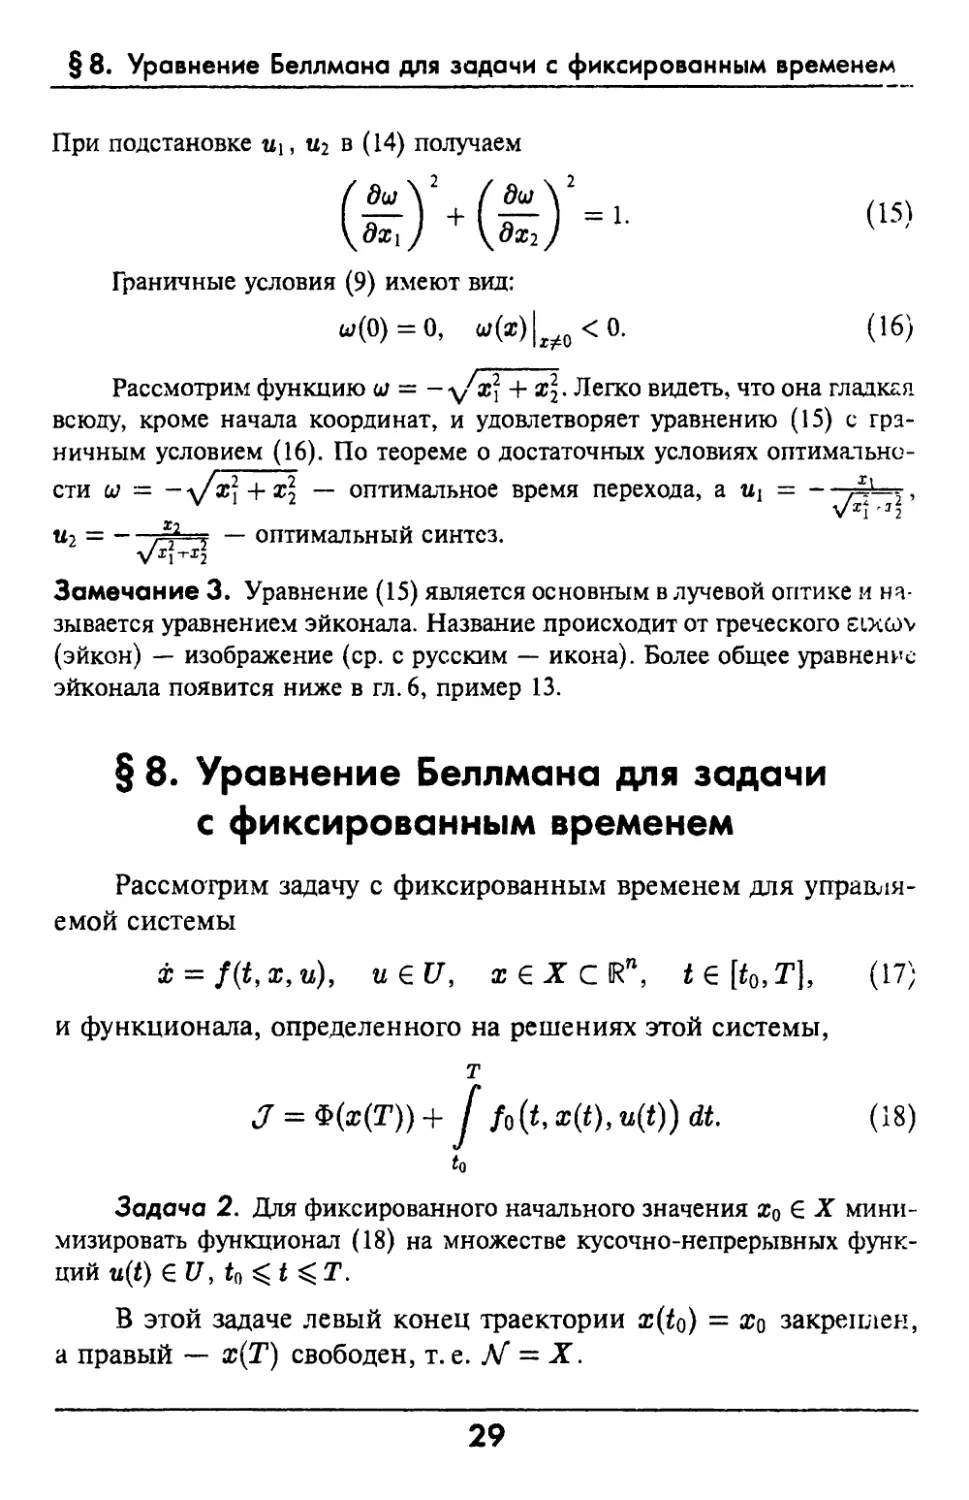 §8. Уравнение Беллмана для задачи с фиксированным временем